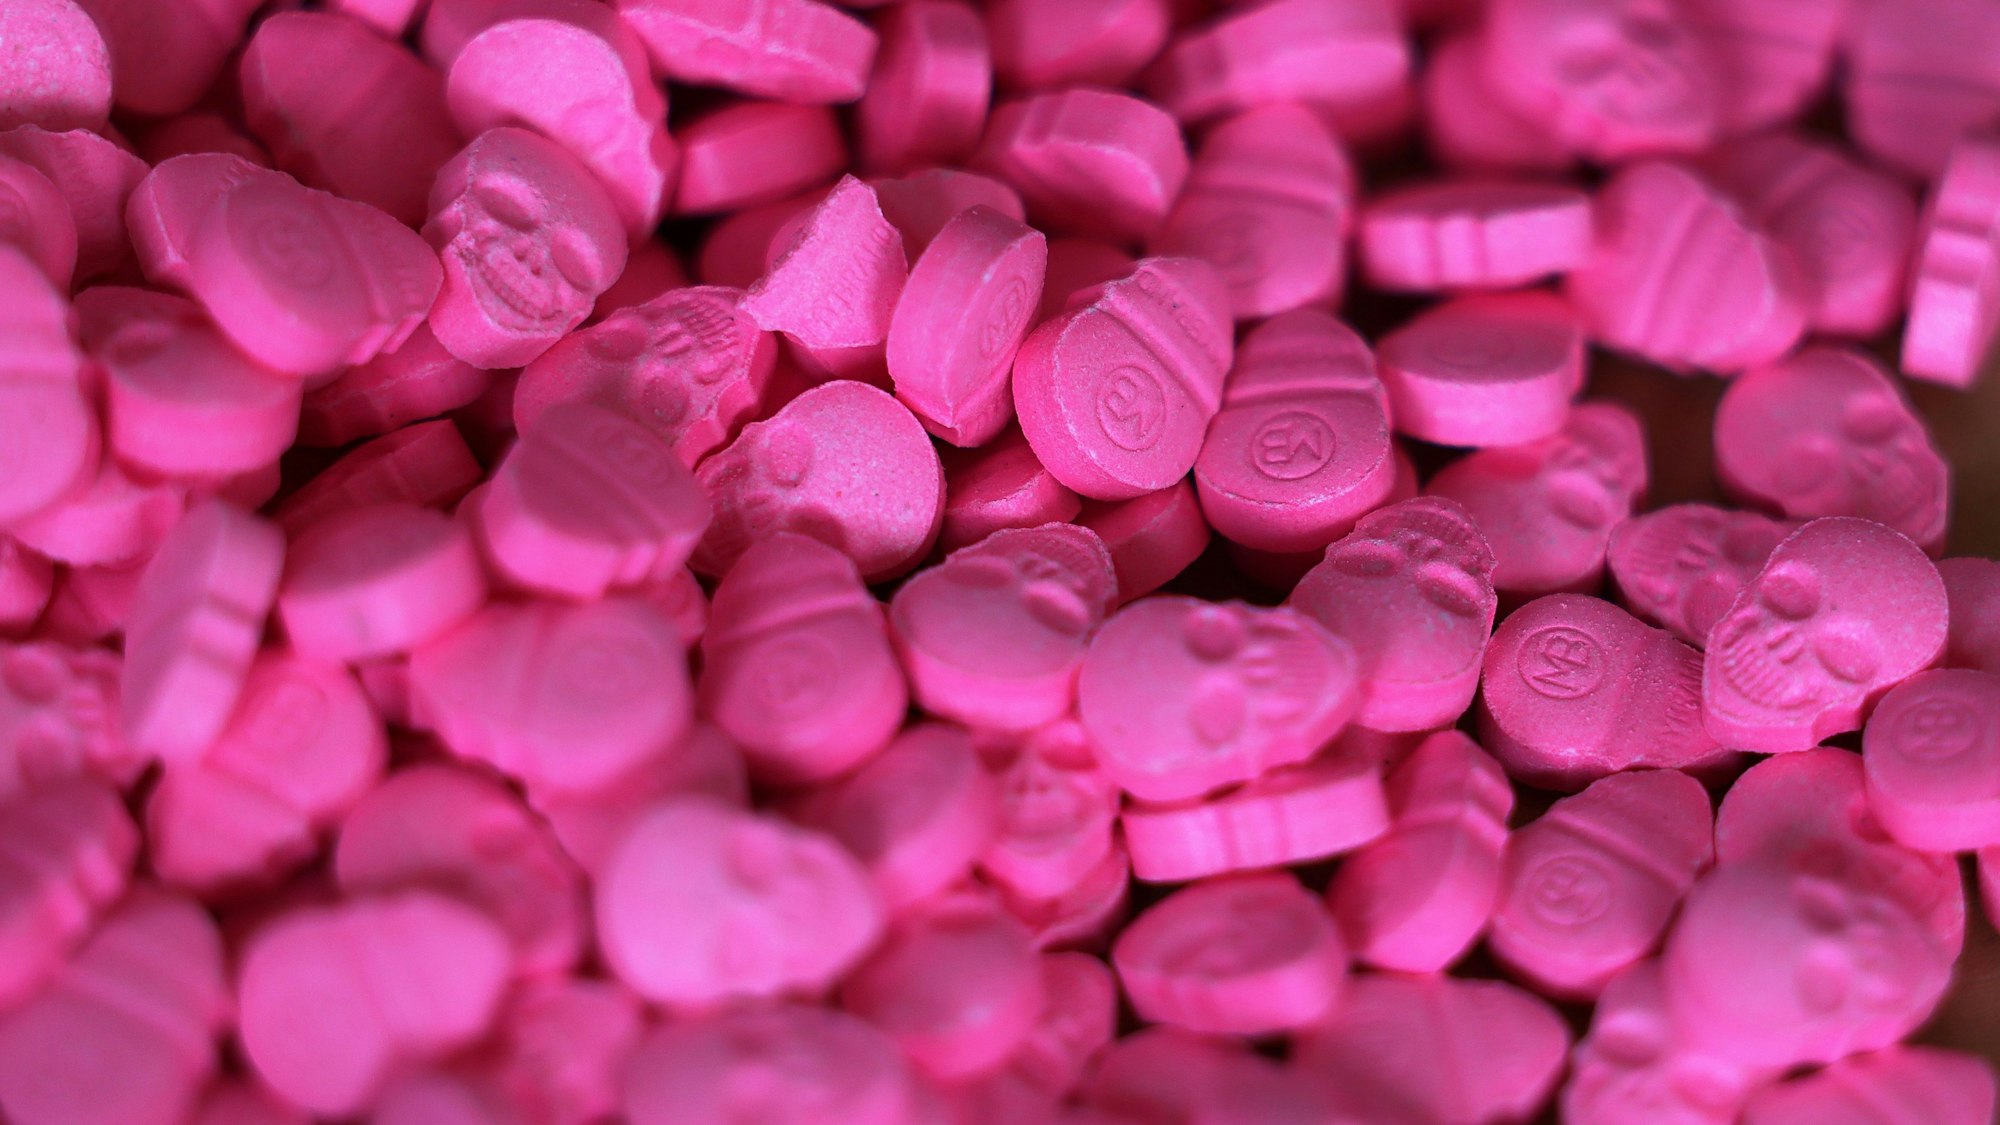 Pinke Ecstasy-Tabletten in Form von Totenköpfen.